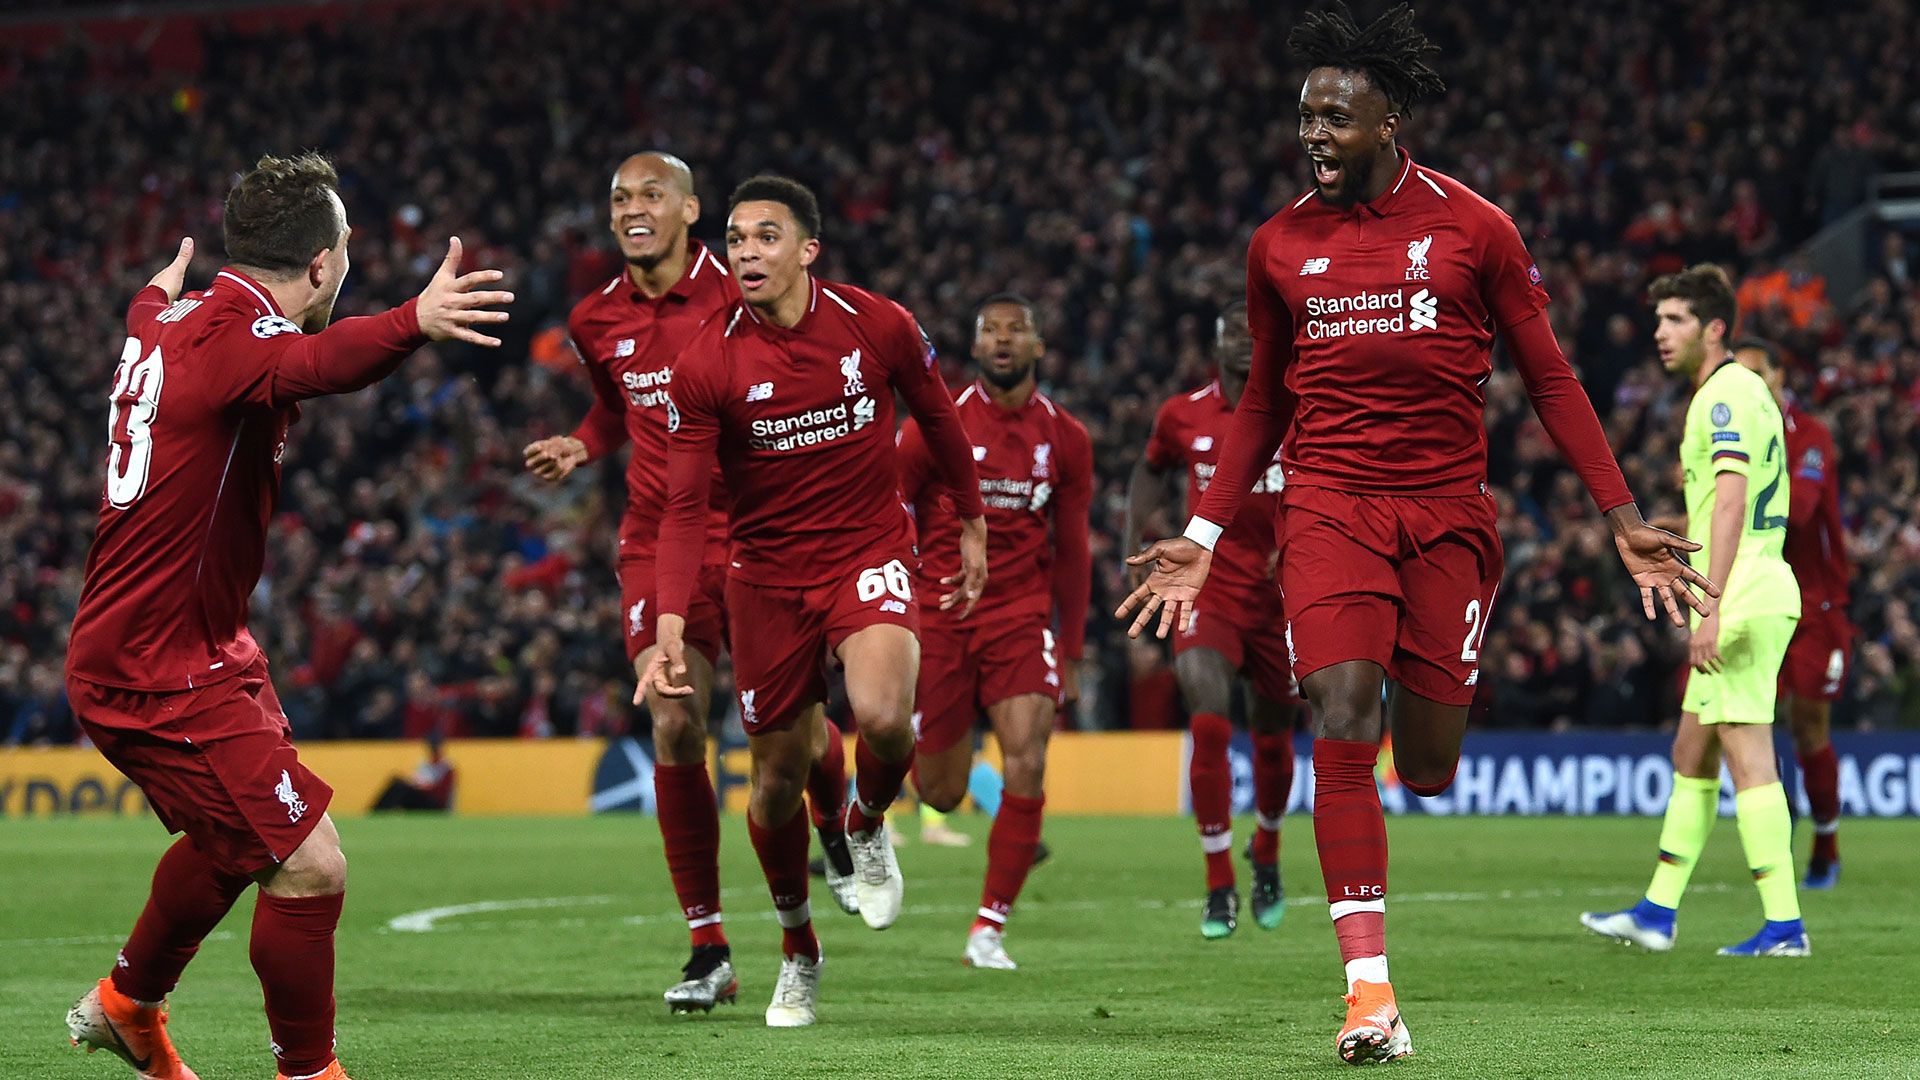 El Liverpool necesita dos victorias para consagrarse campeón de la temporada 2019/20.